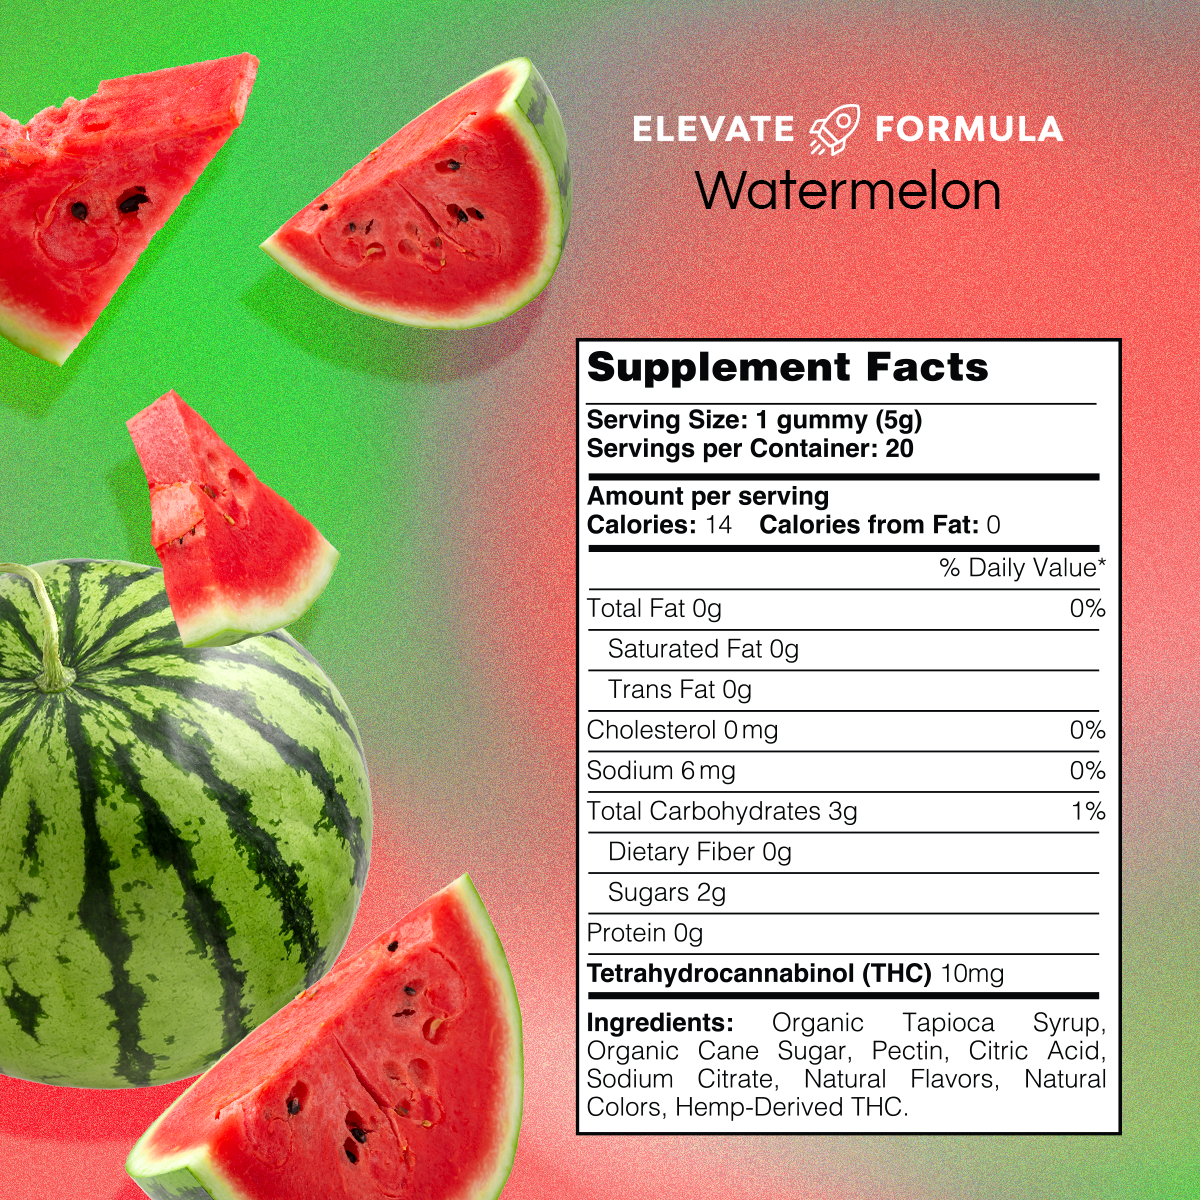 Delta-9 THC Gummies - Watermelon